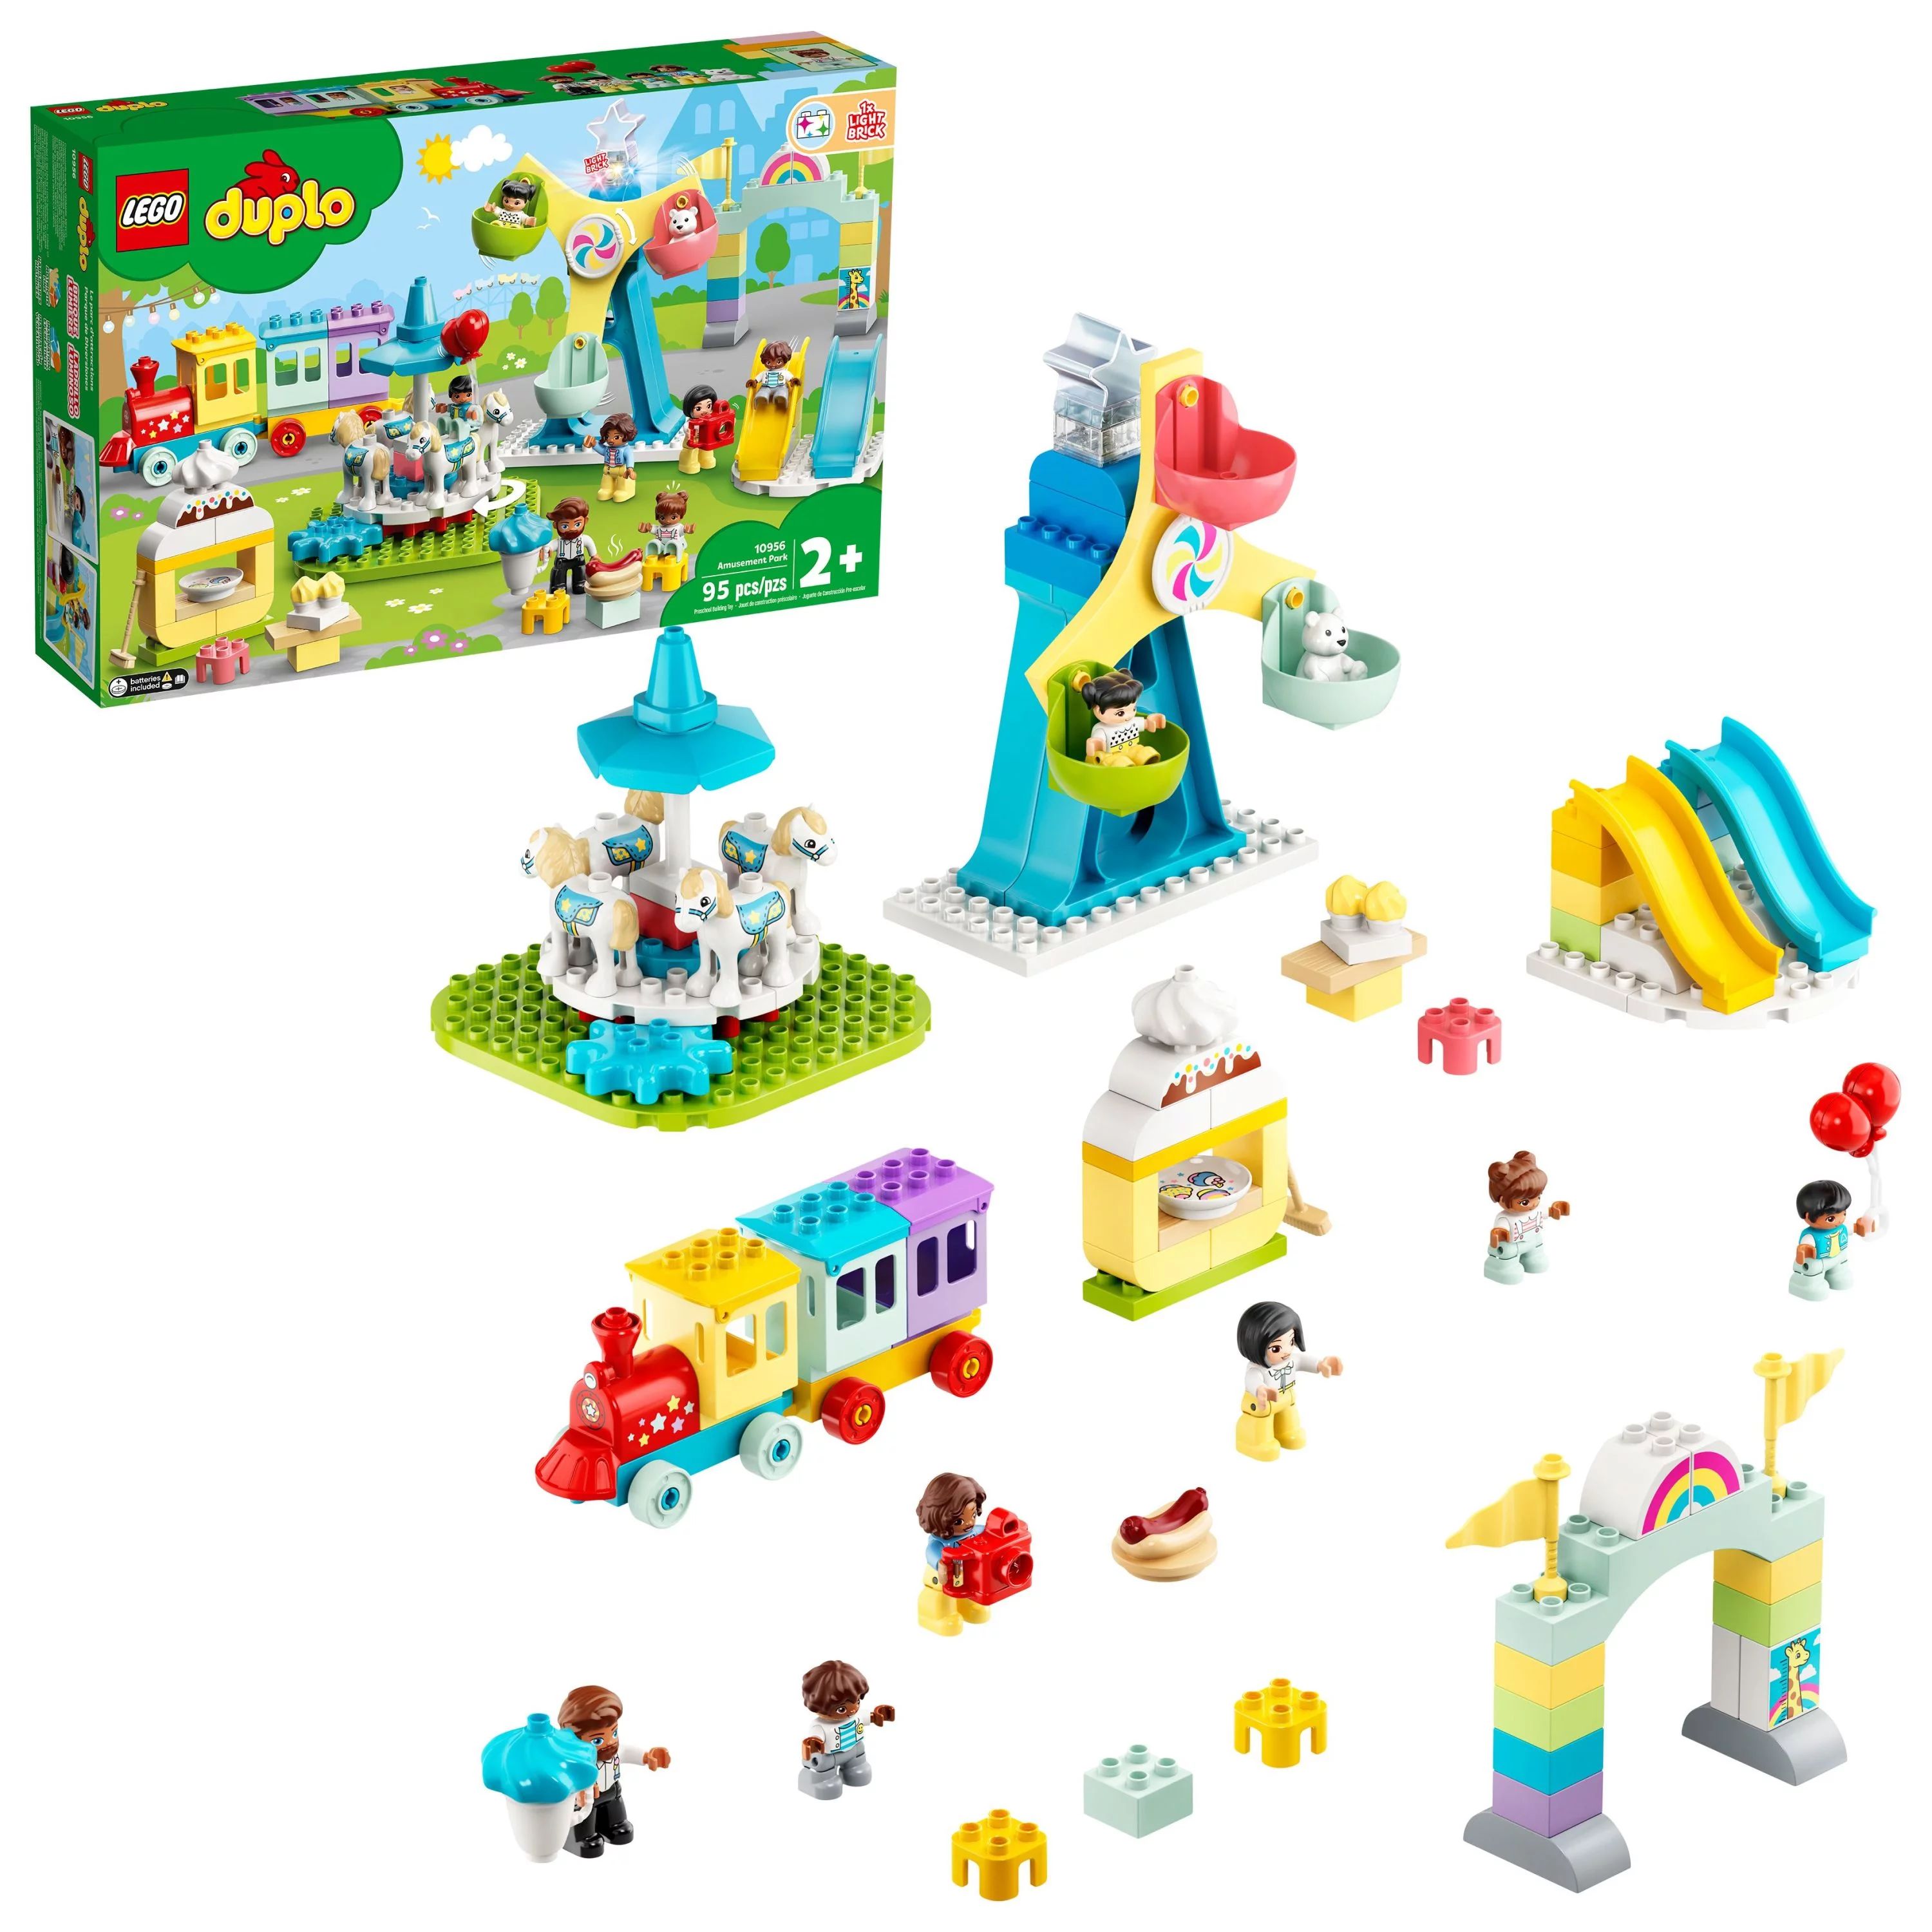 LEGO DUPLO Town Amusement Park Fairground 10956 Building Set - Featuring 7 Duplo Figures, Trains,... | Walmart (US)